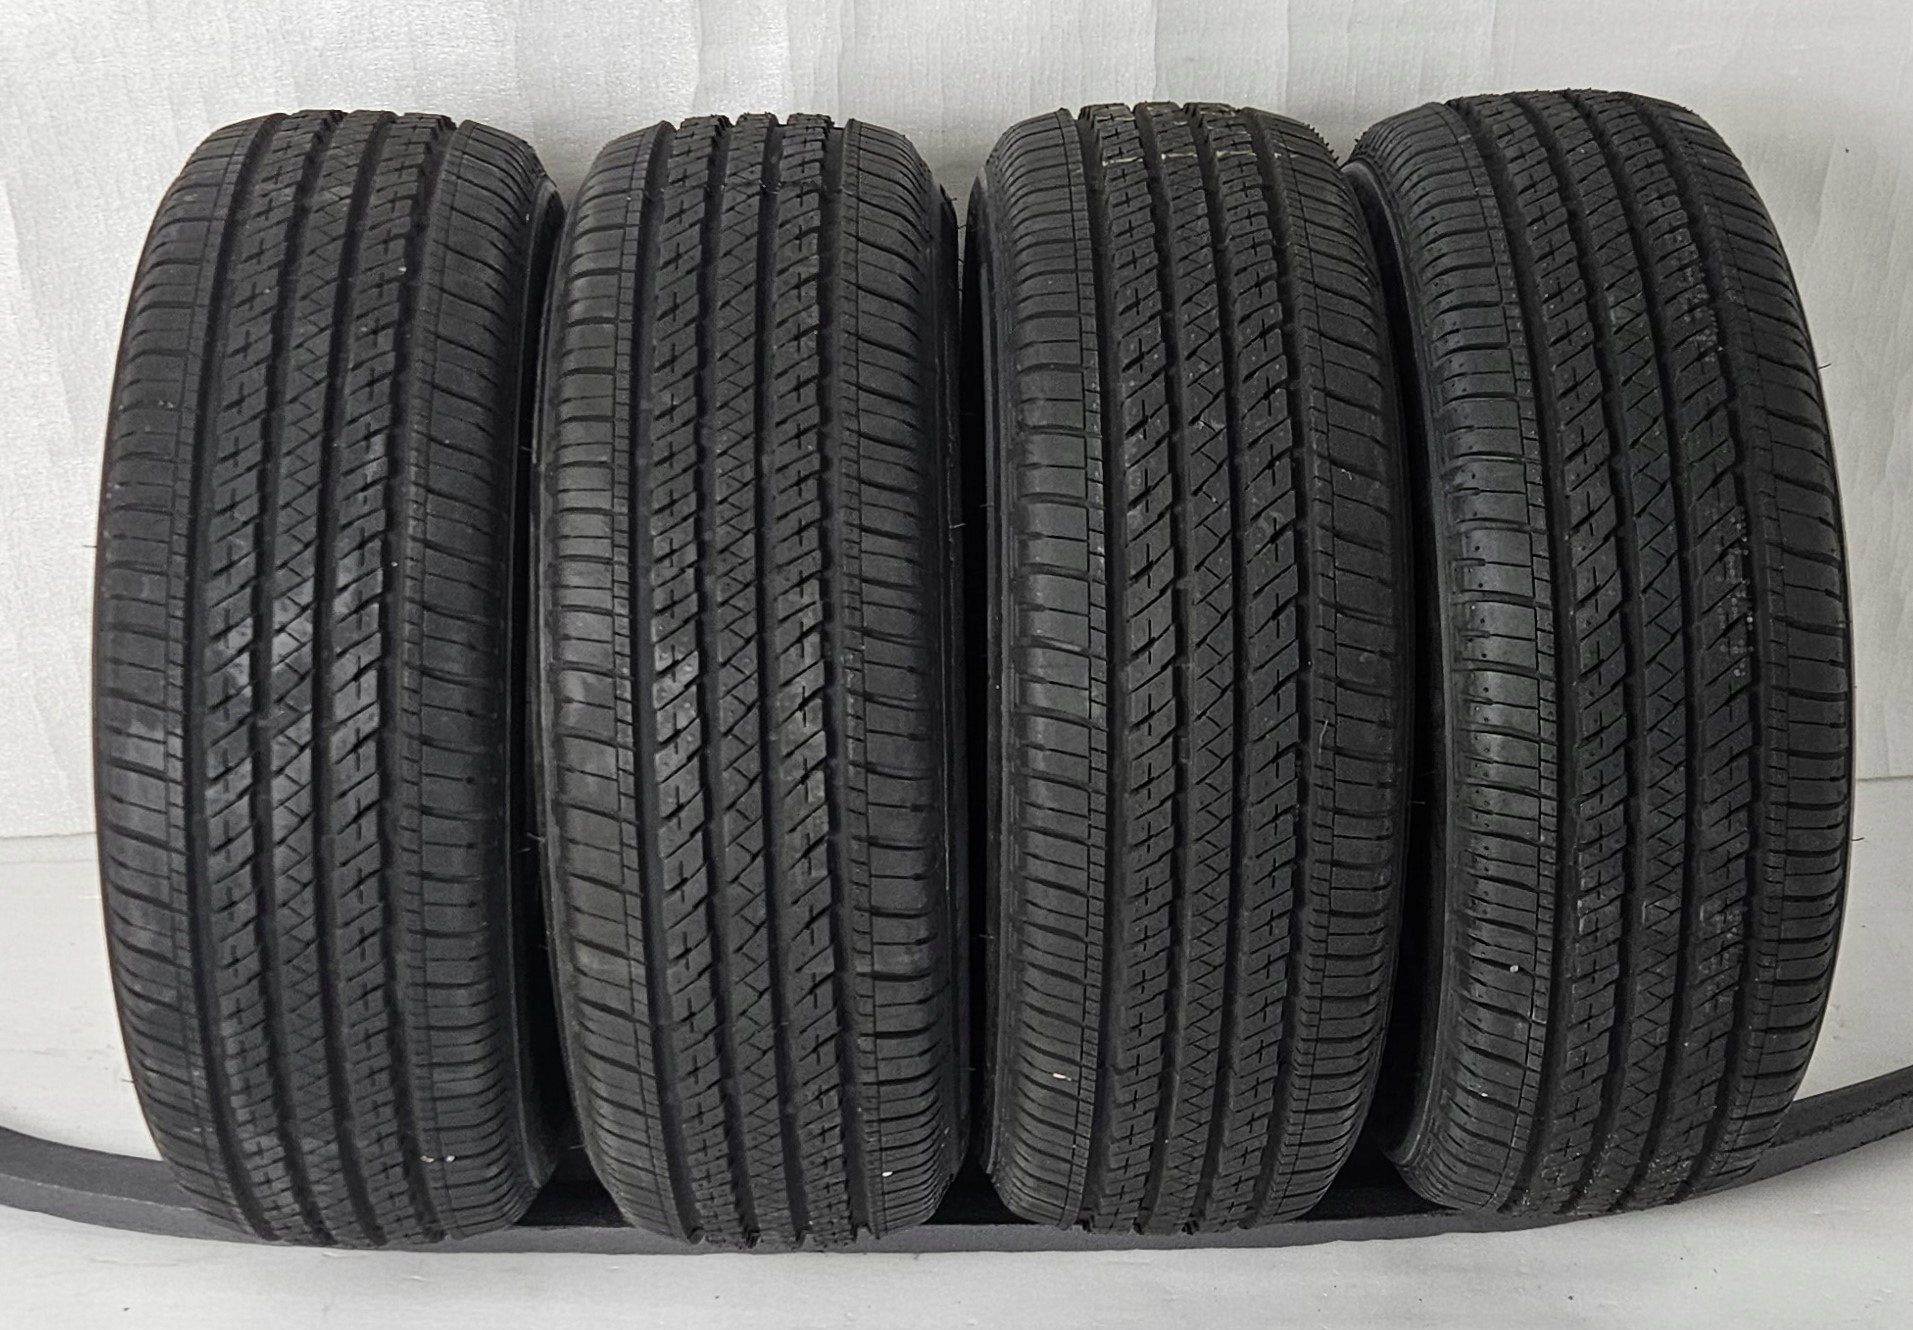 Bridgestone Ecopia EP422 Plus A/S, 205/60R16 92H All Season Tire